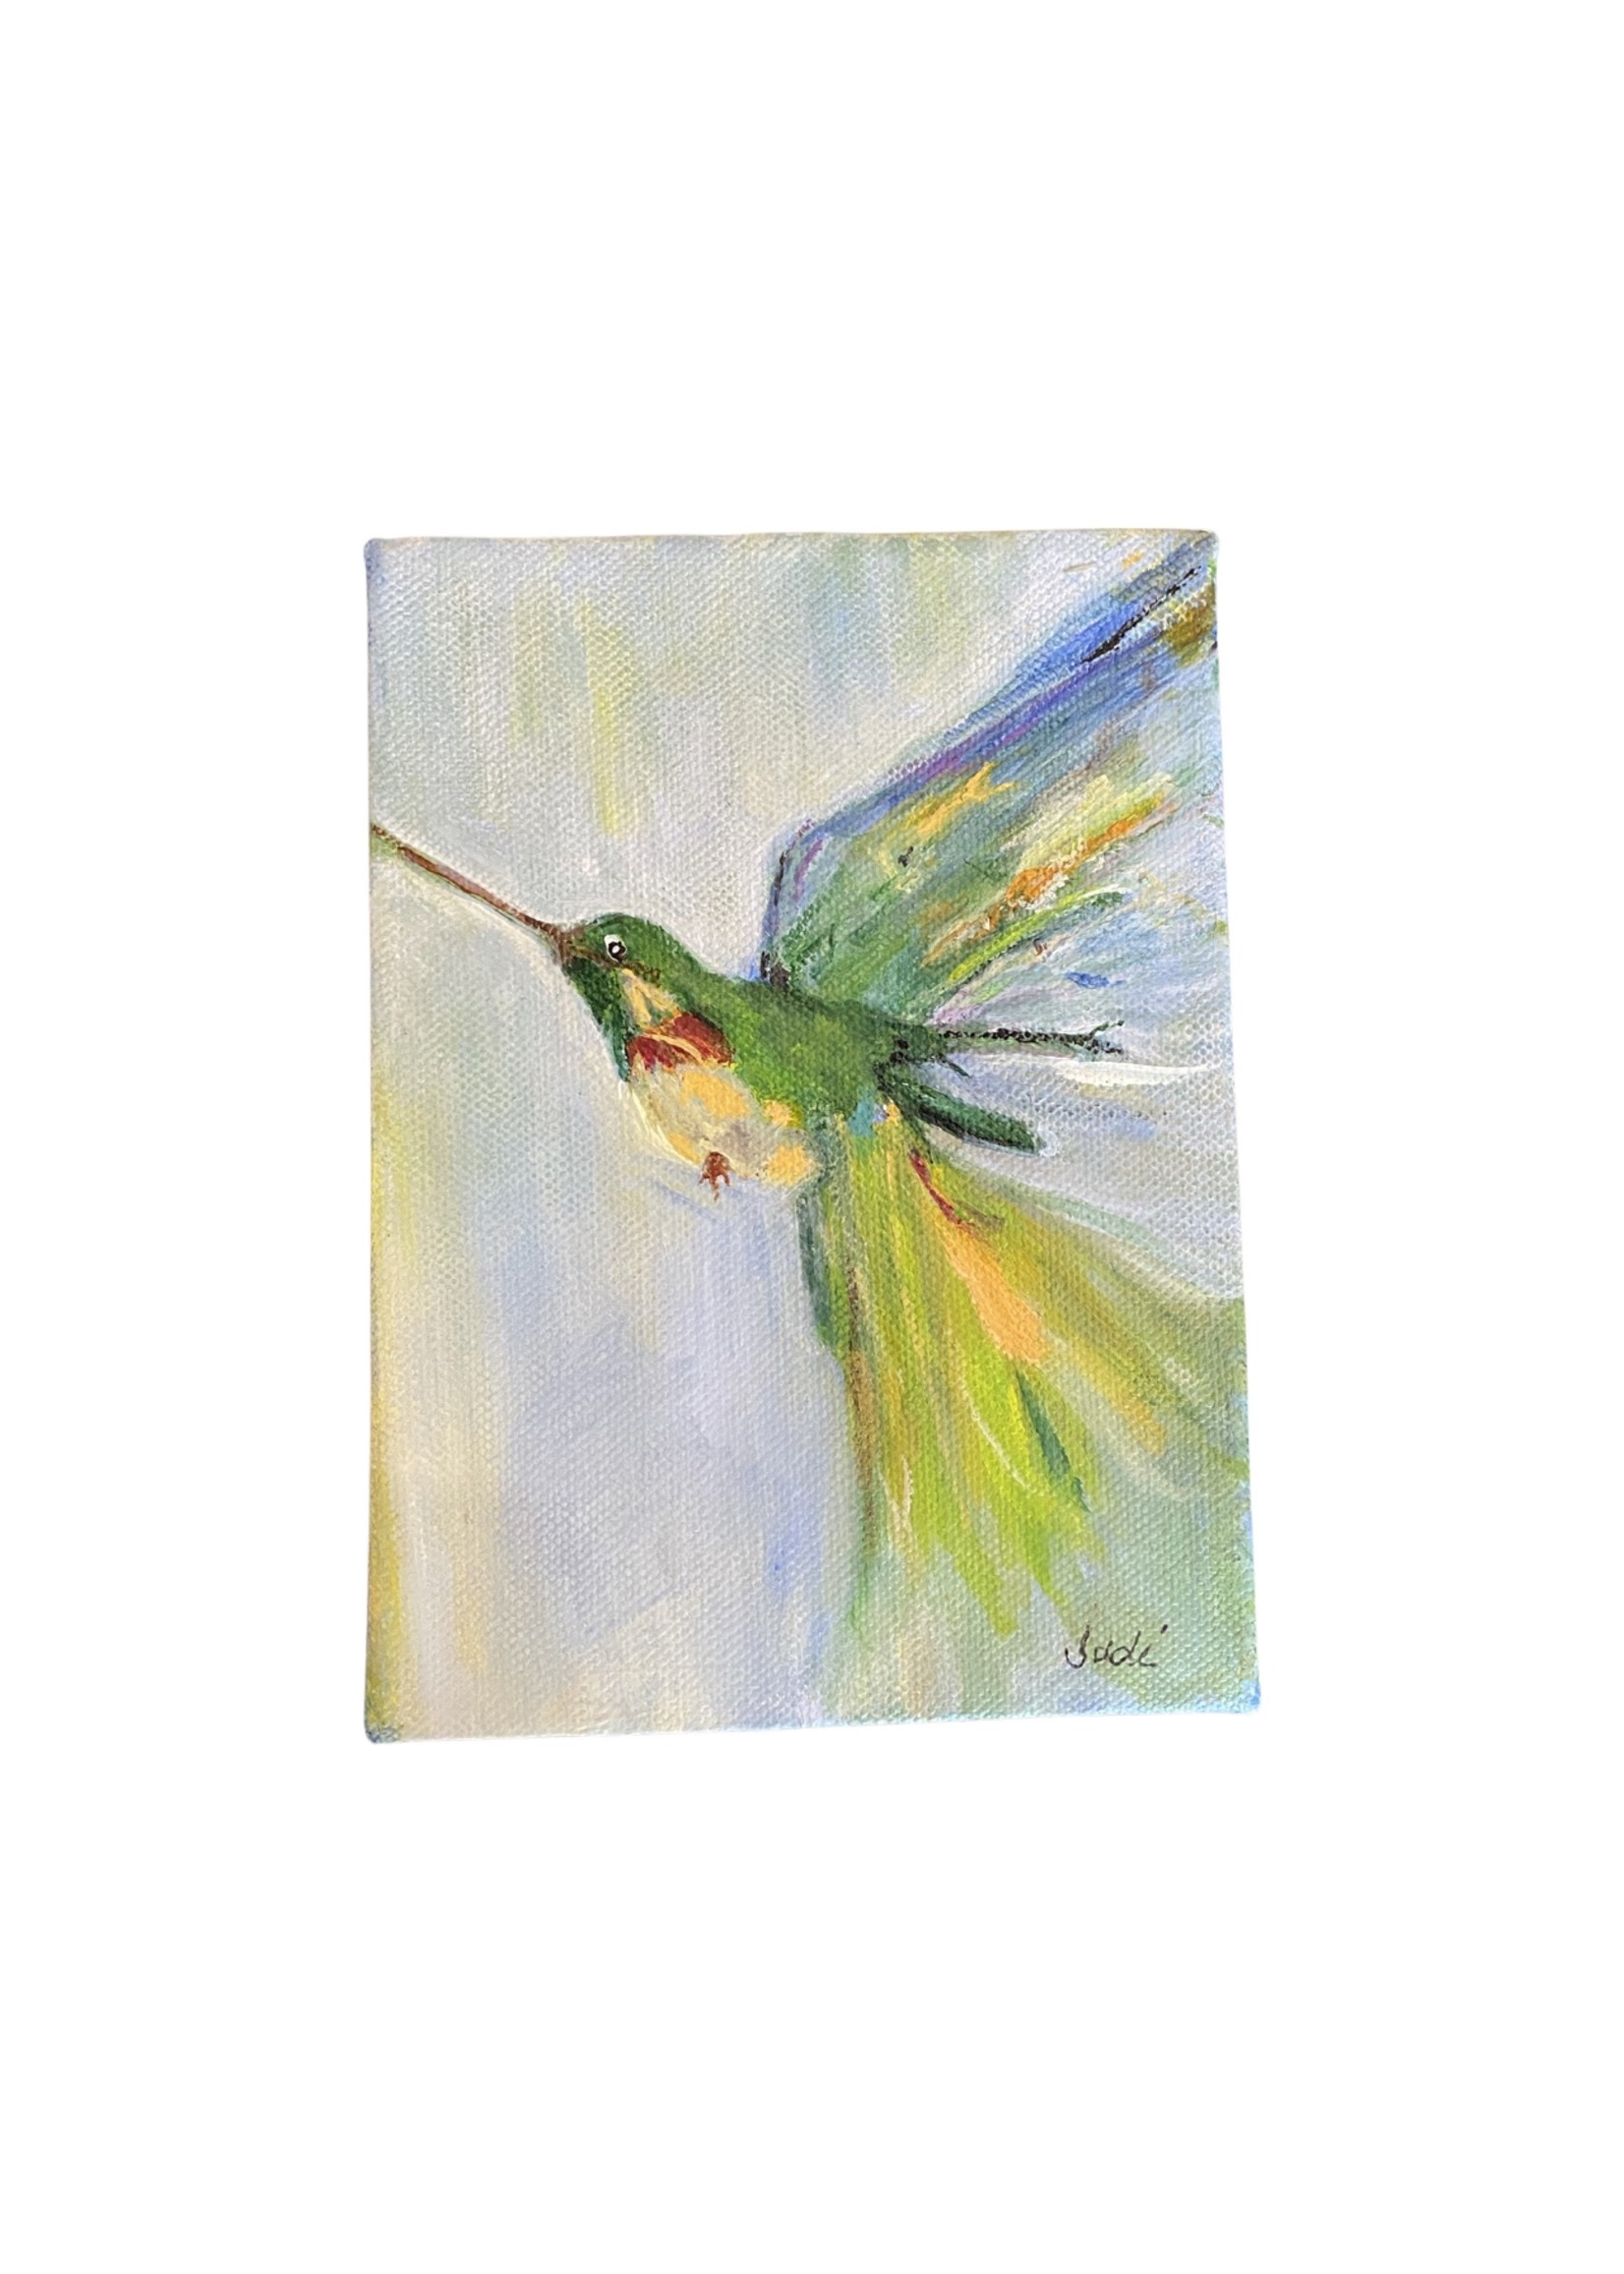 Judi Board Hummingbird painting 5x7"